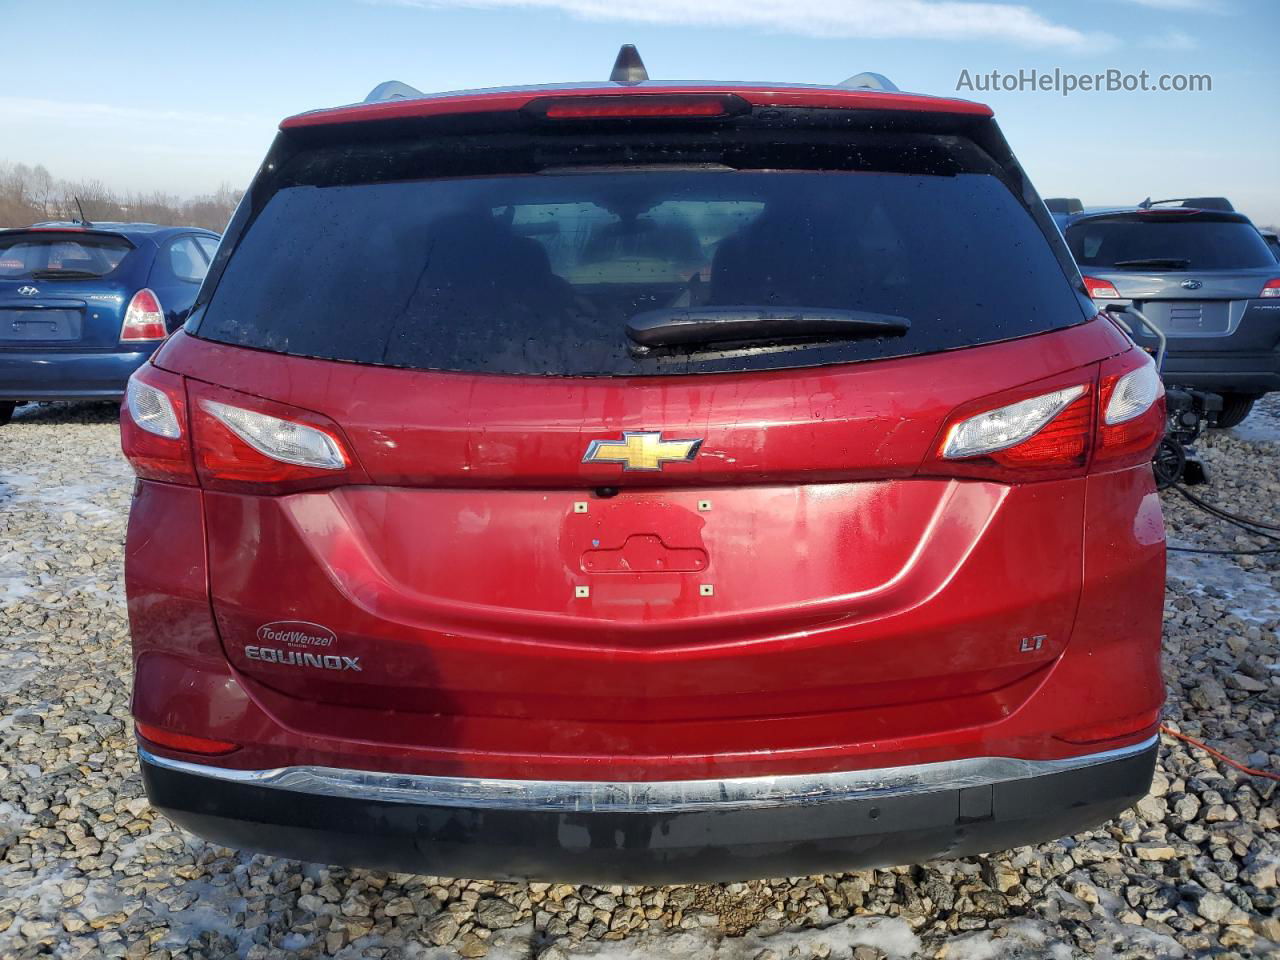 2019 Chevrolet Equinox Lt Red vin: 3GNAXKEV5KS617218